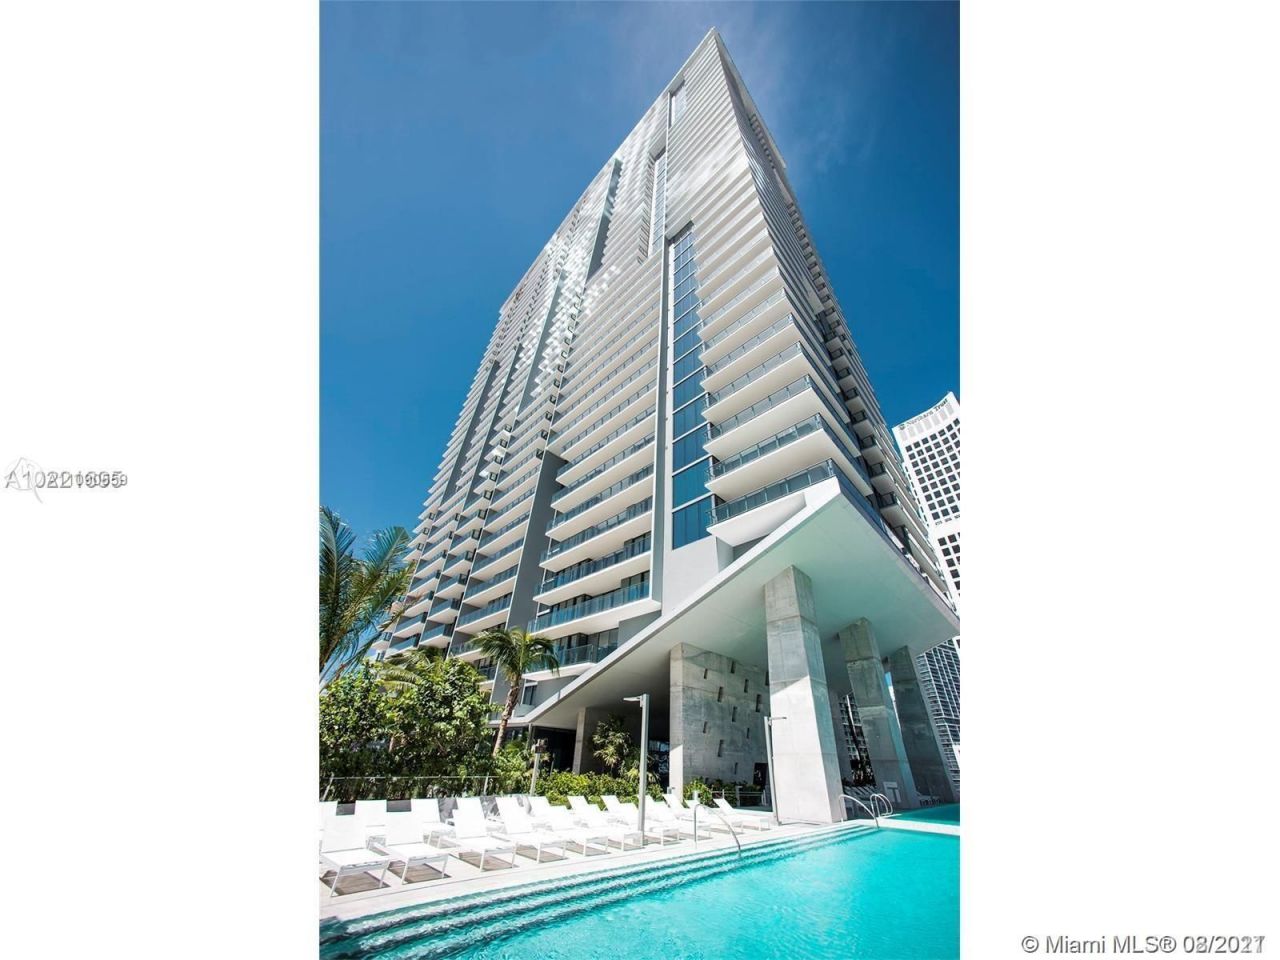 Appartement à Miami, États-Unis, 81 m2 - image 1